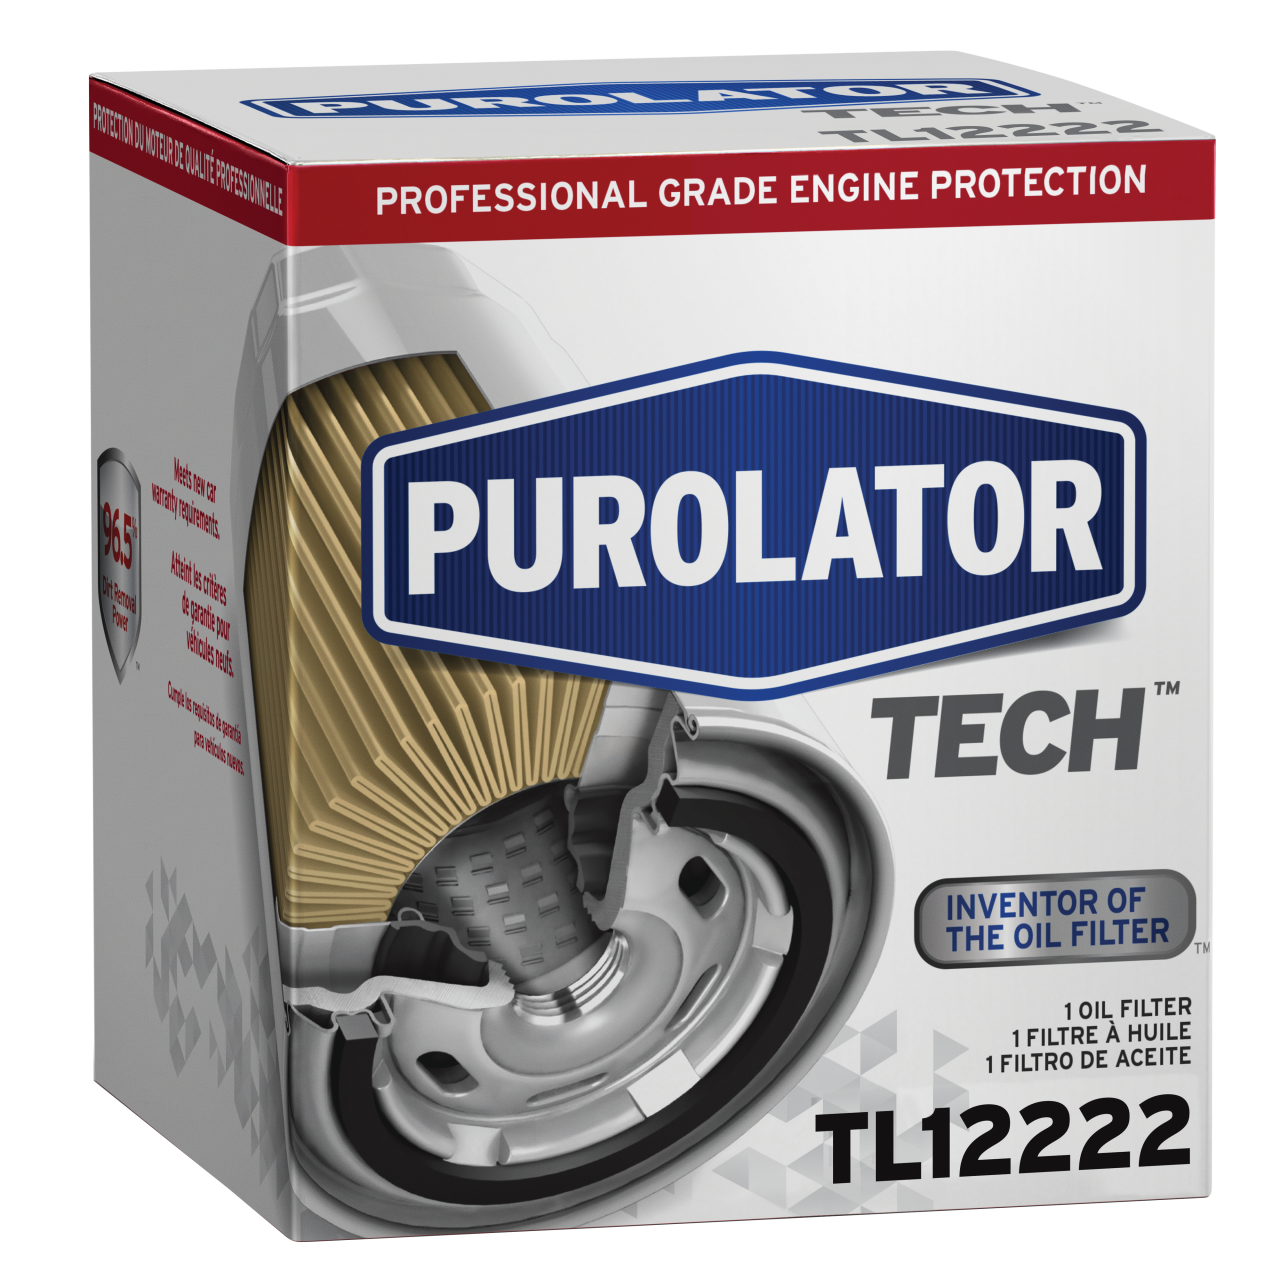 Muchos de los mejores expertos en automóviles confían en los filtros de aceite PurolatorTECH™ para lograr el mejor rendimiento y protección del motor.